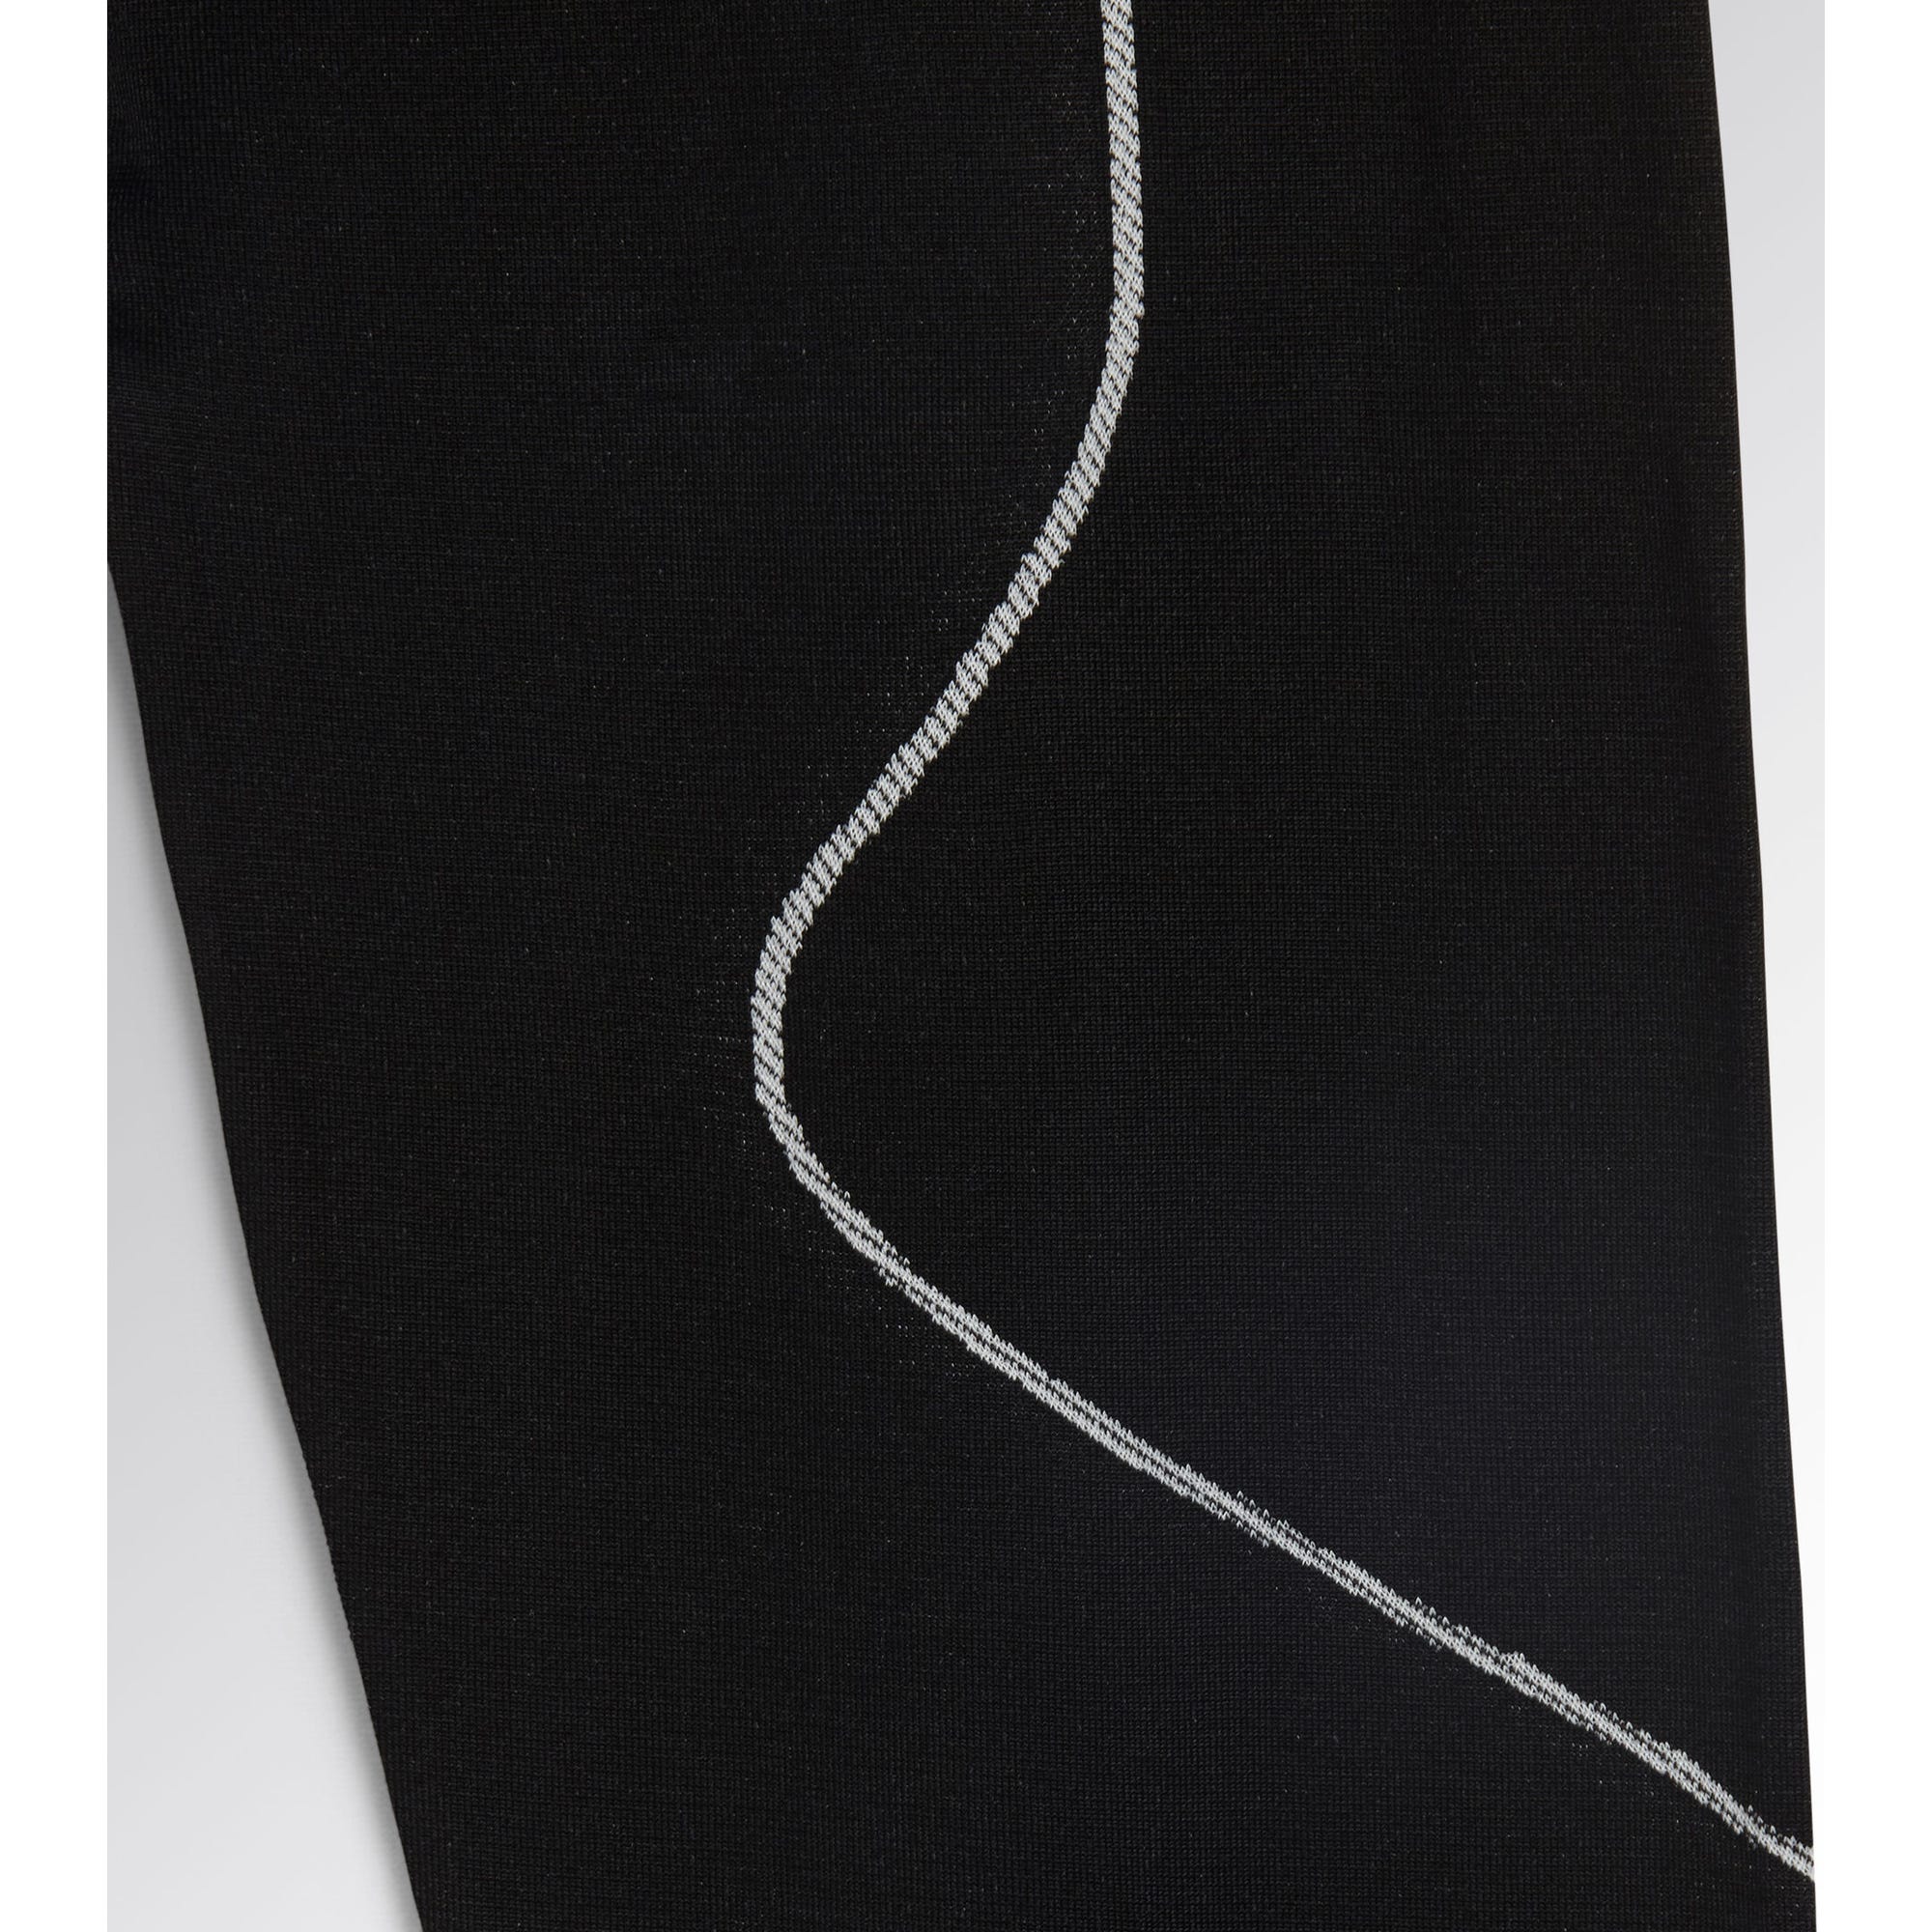 Pantalon Sous-vêtement Noir L/Xl Pant Soul Diadora 3